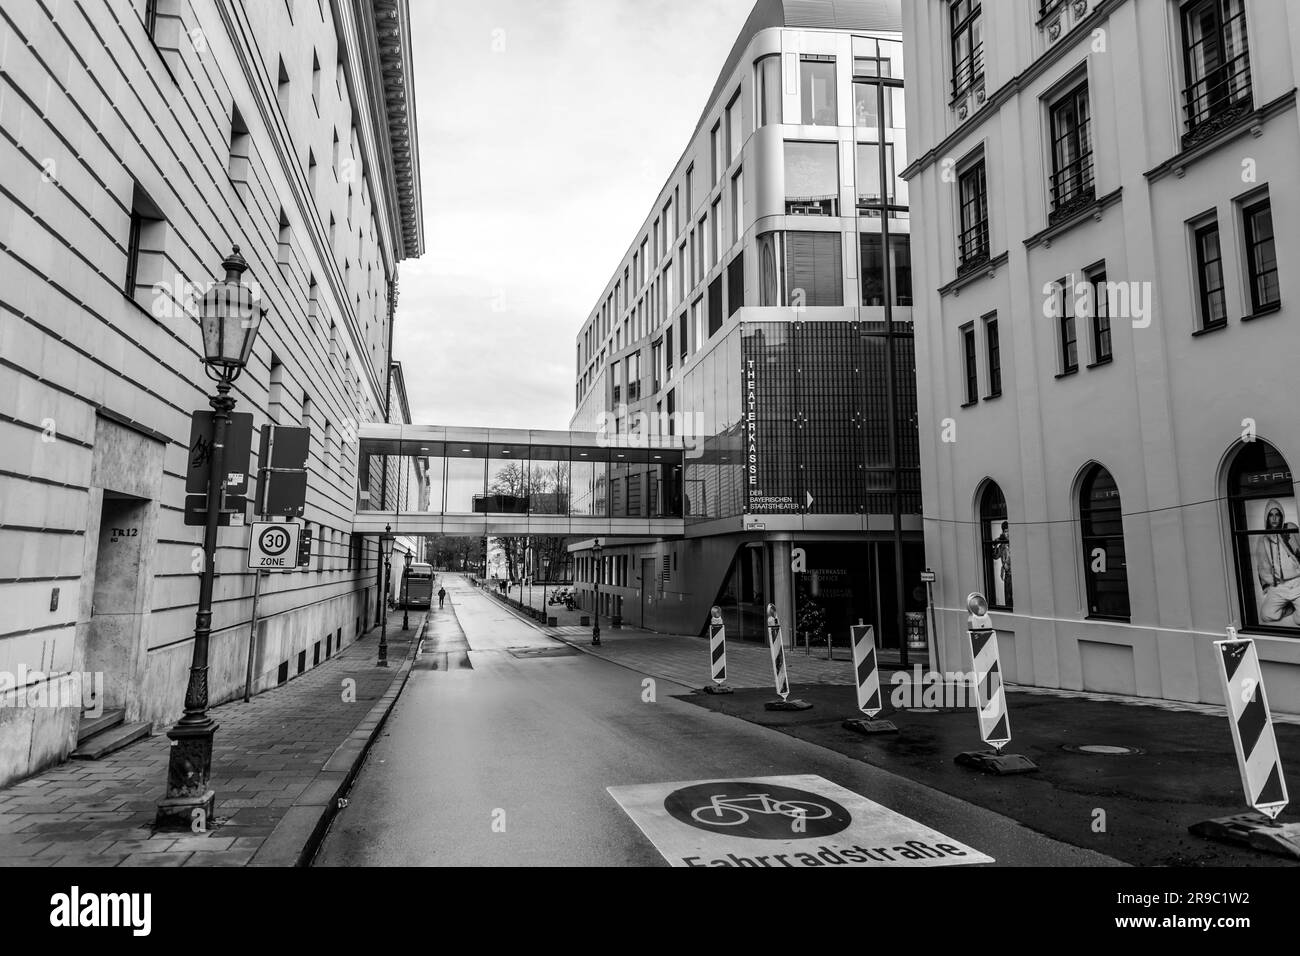 Munich, Allemagne - 25 décembre 2021 : architecture typique et vue sur la rue à Munich, la capitale de l'État bavarois d'Allemagne. Banque D'Images